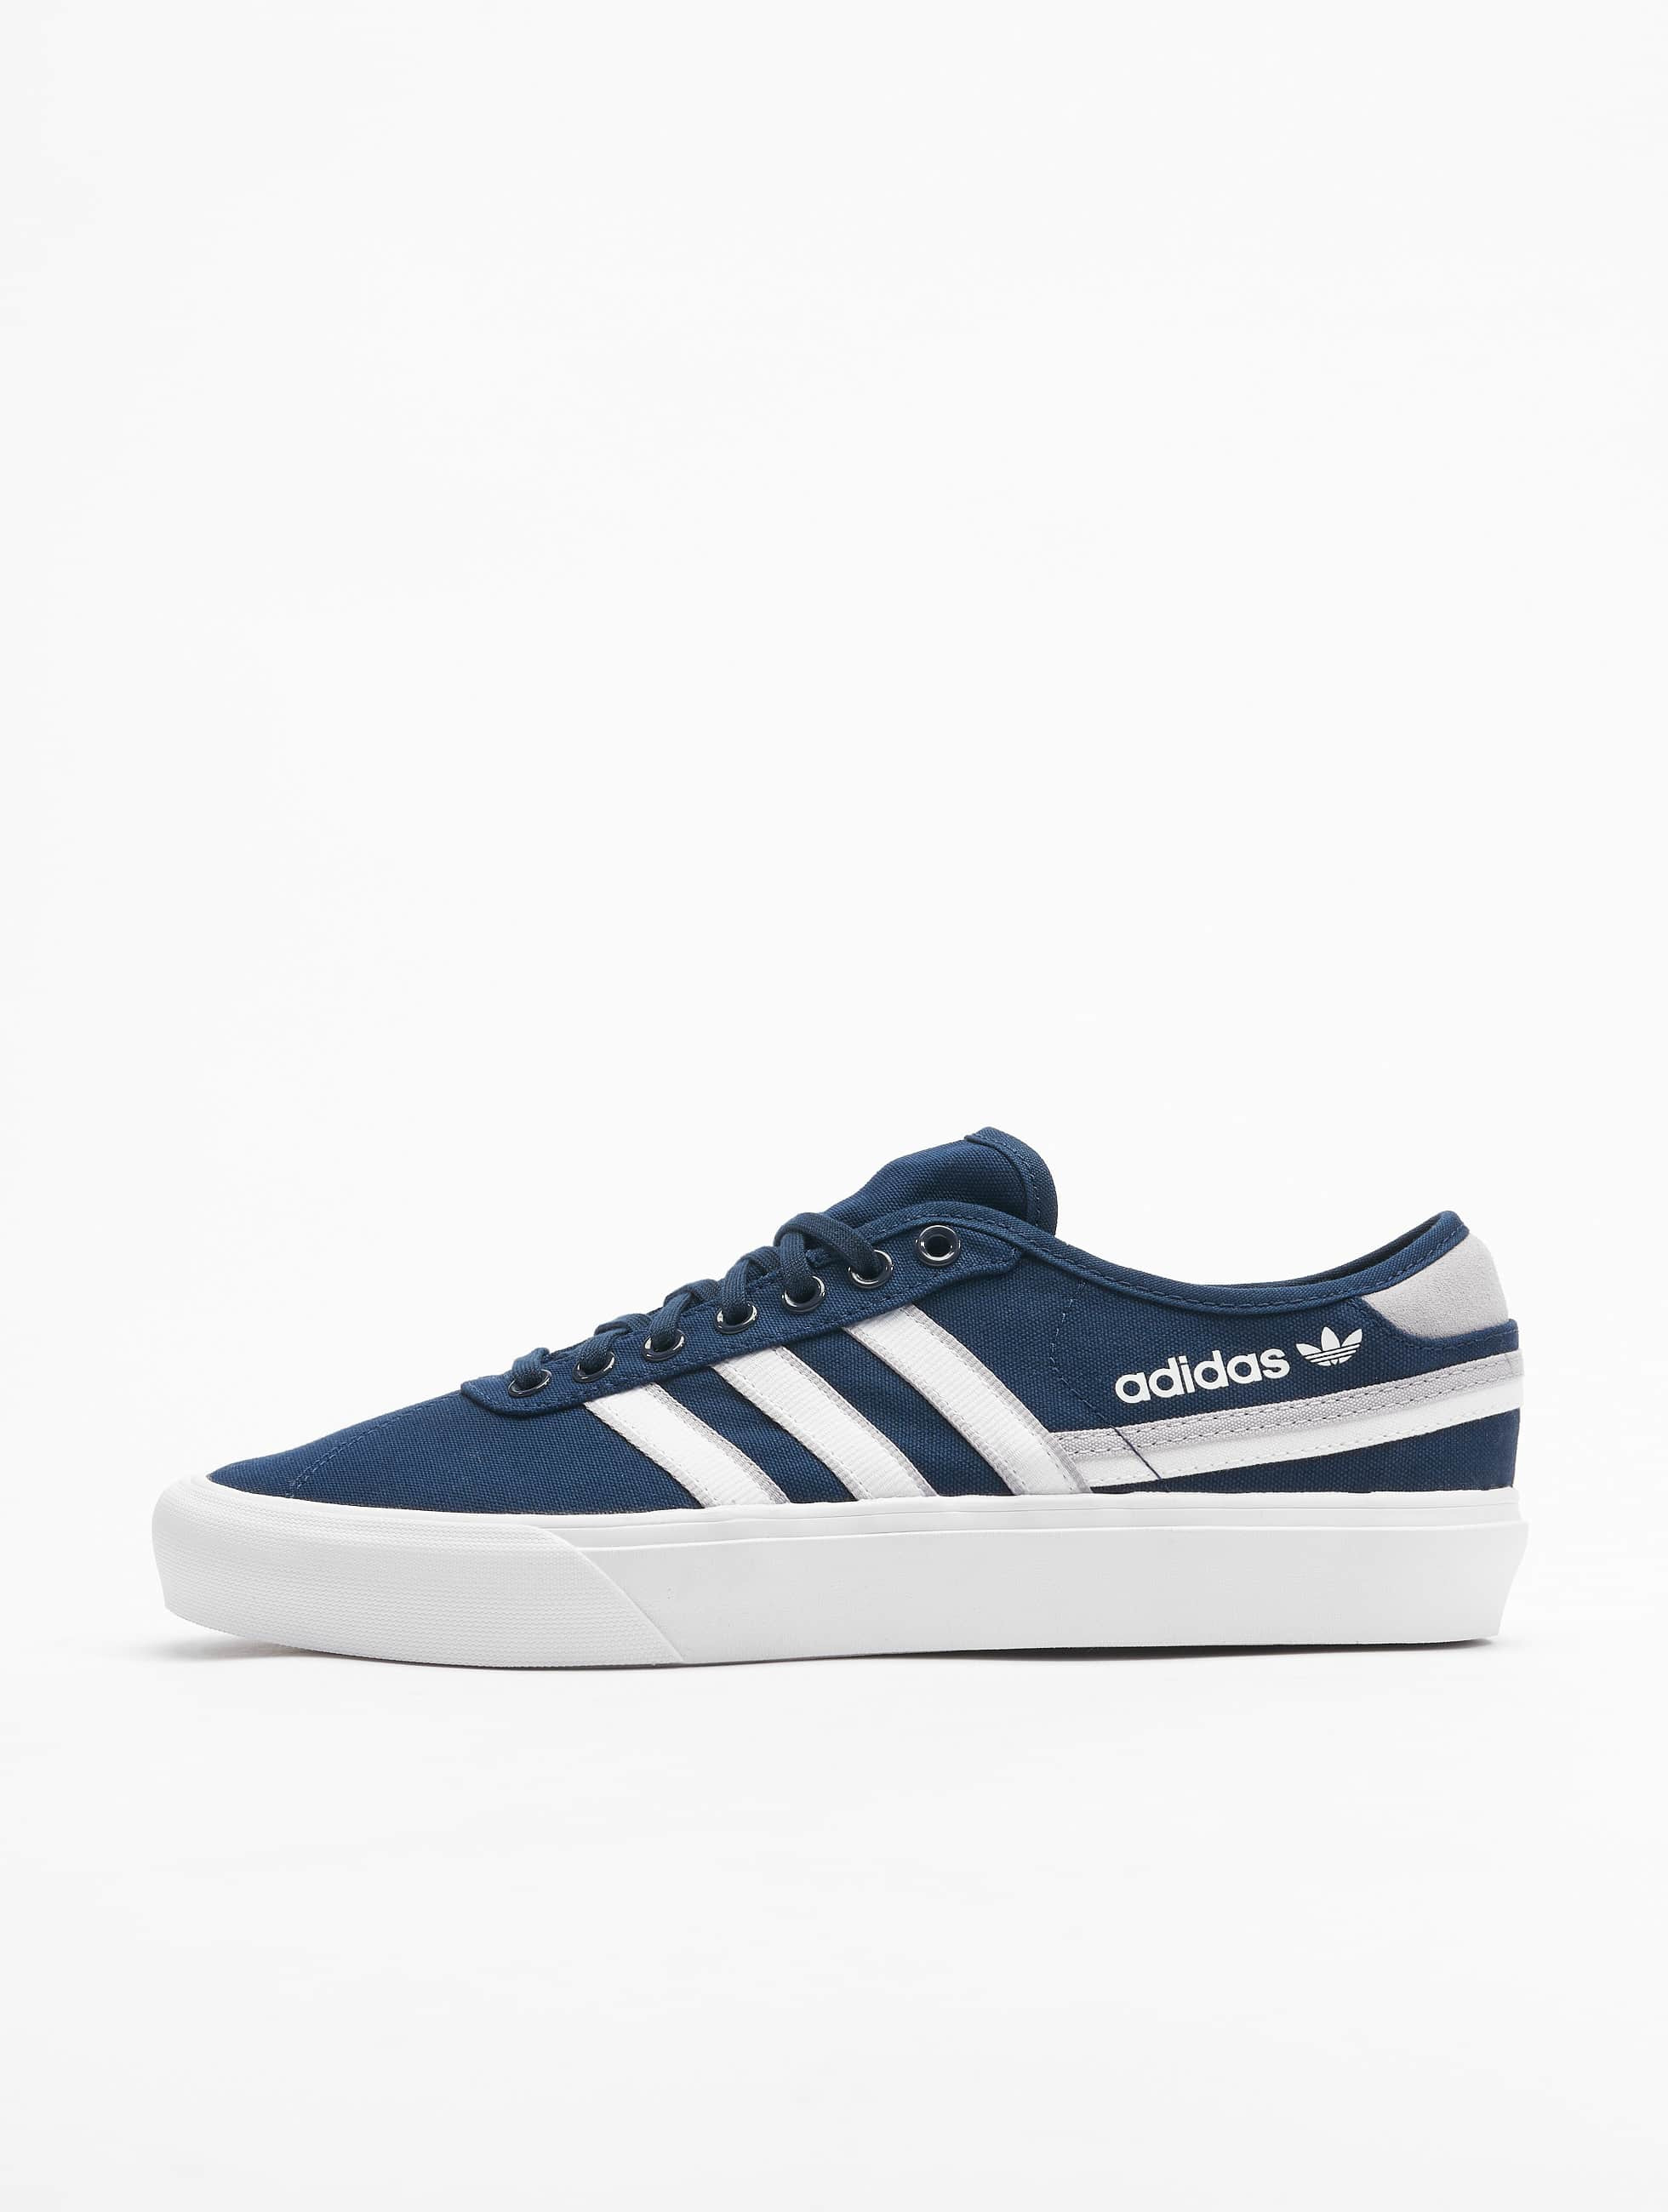 Voorloper Kinderachtig voor adidas Originals schoen / sneaker Delpala in blauw 809492